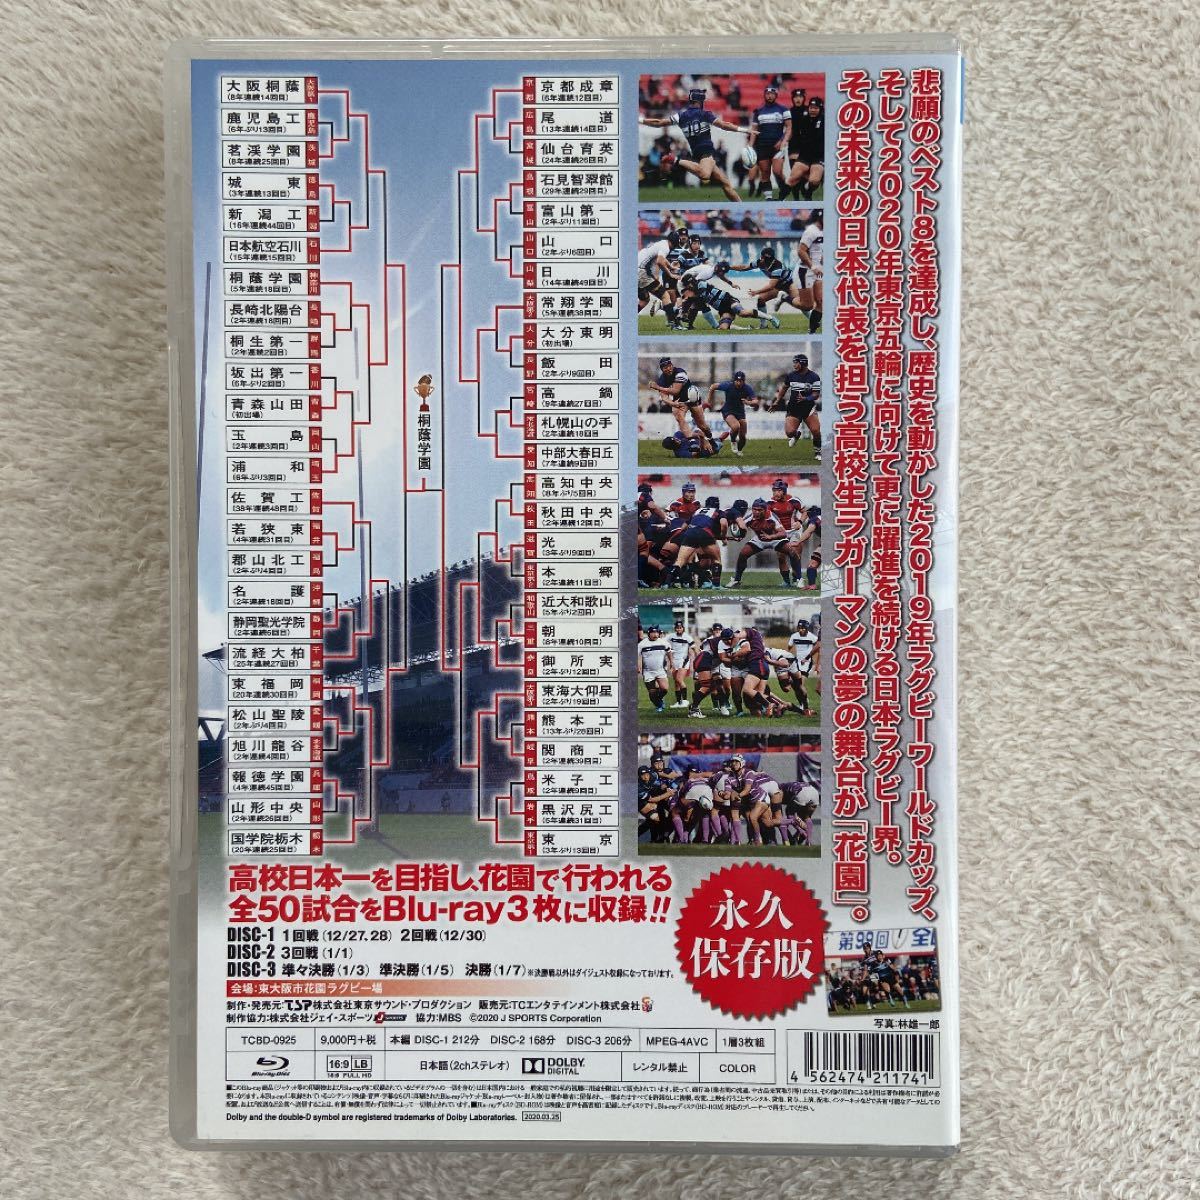 花園の記録 2019年度~第99回 全国高等学校ラグビーフットボール大会~ (Blu-ray Disc) 